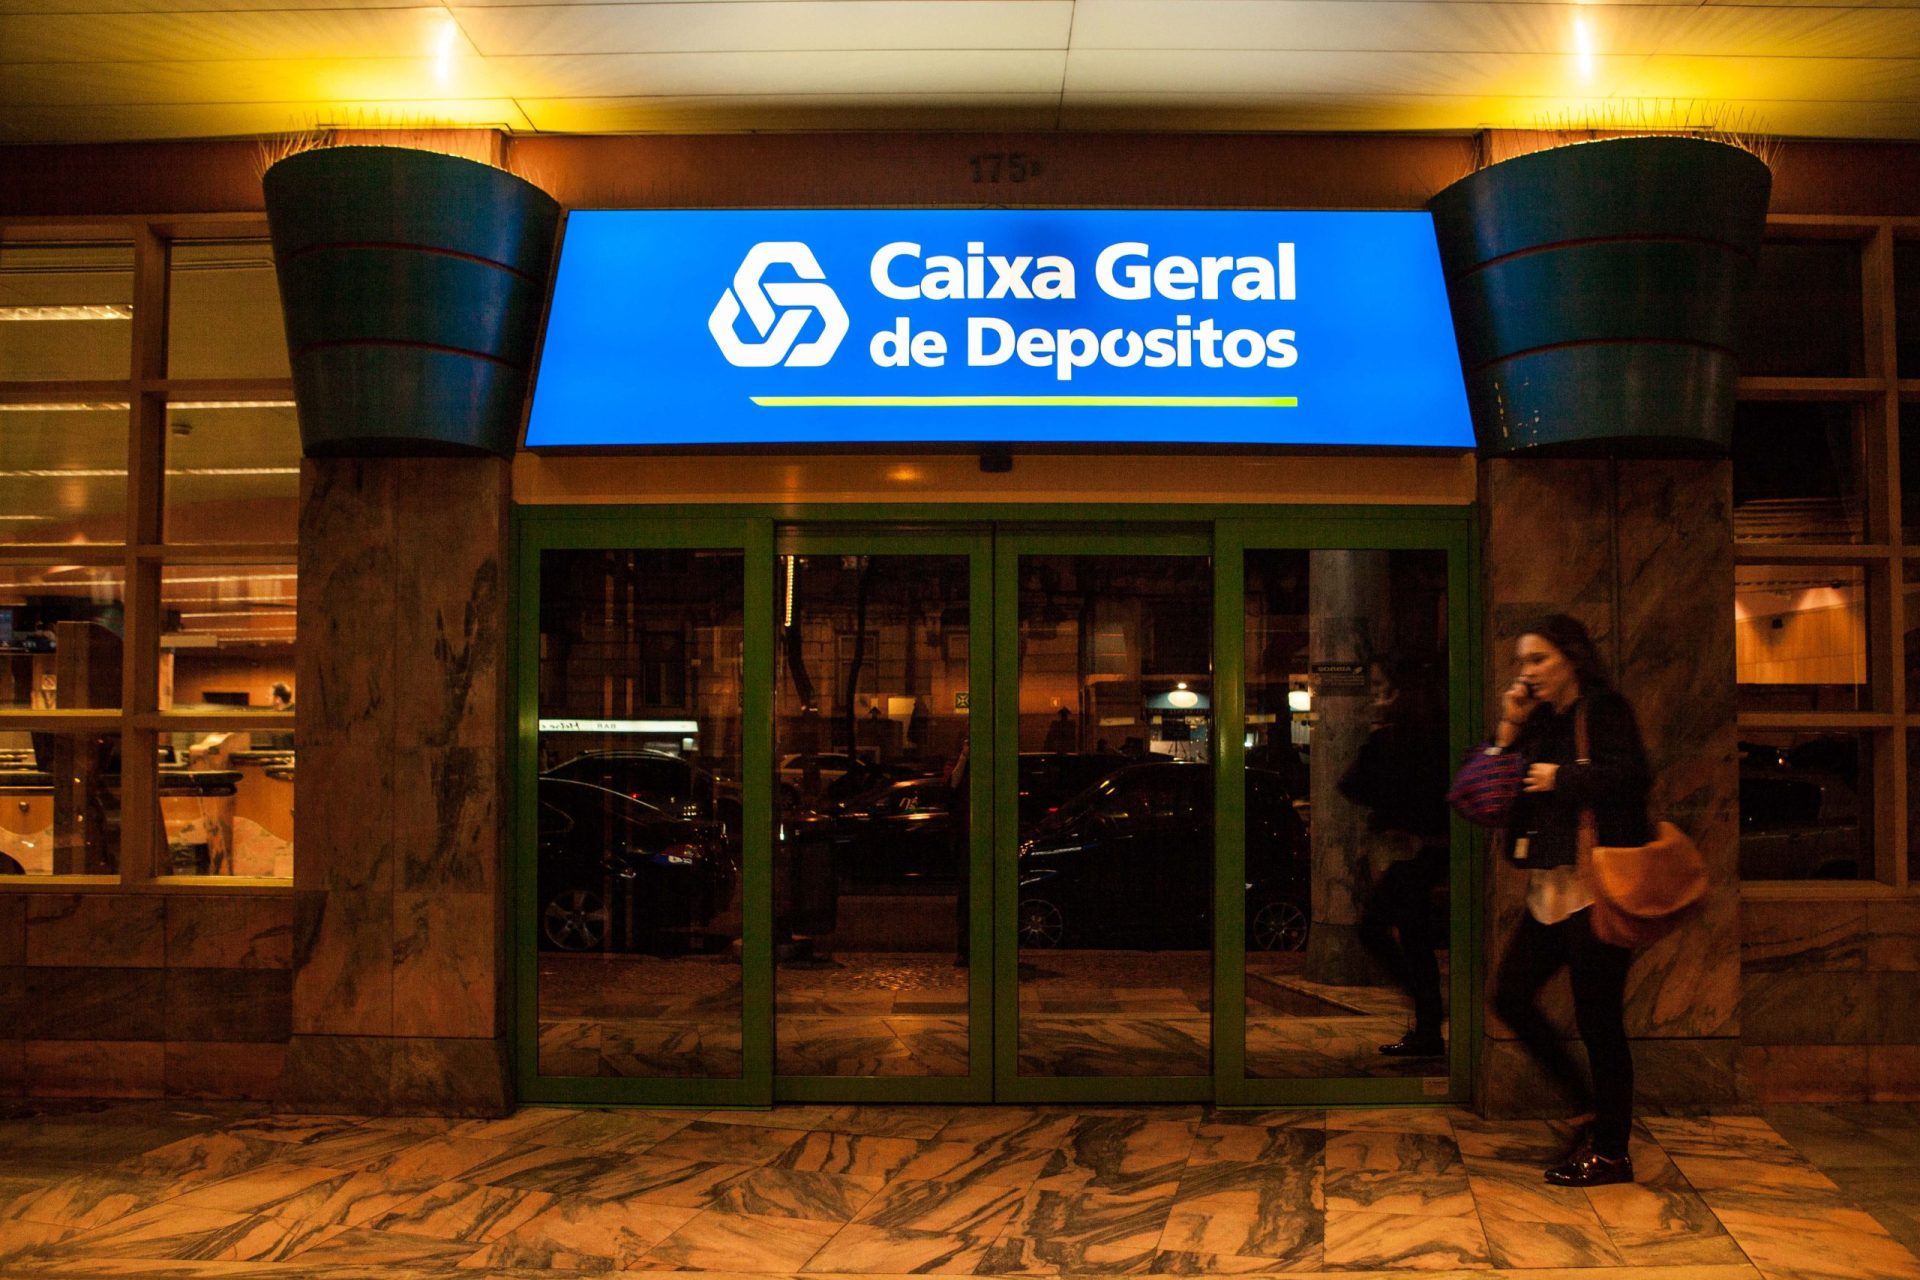 Autarcas de Almeida barricam-se em balcão da Caixa Geral de Depósitos